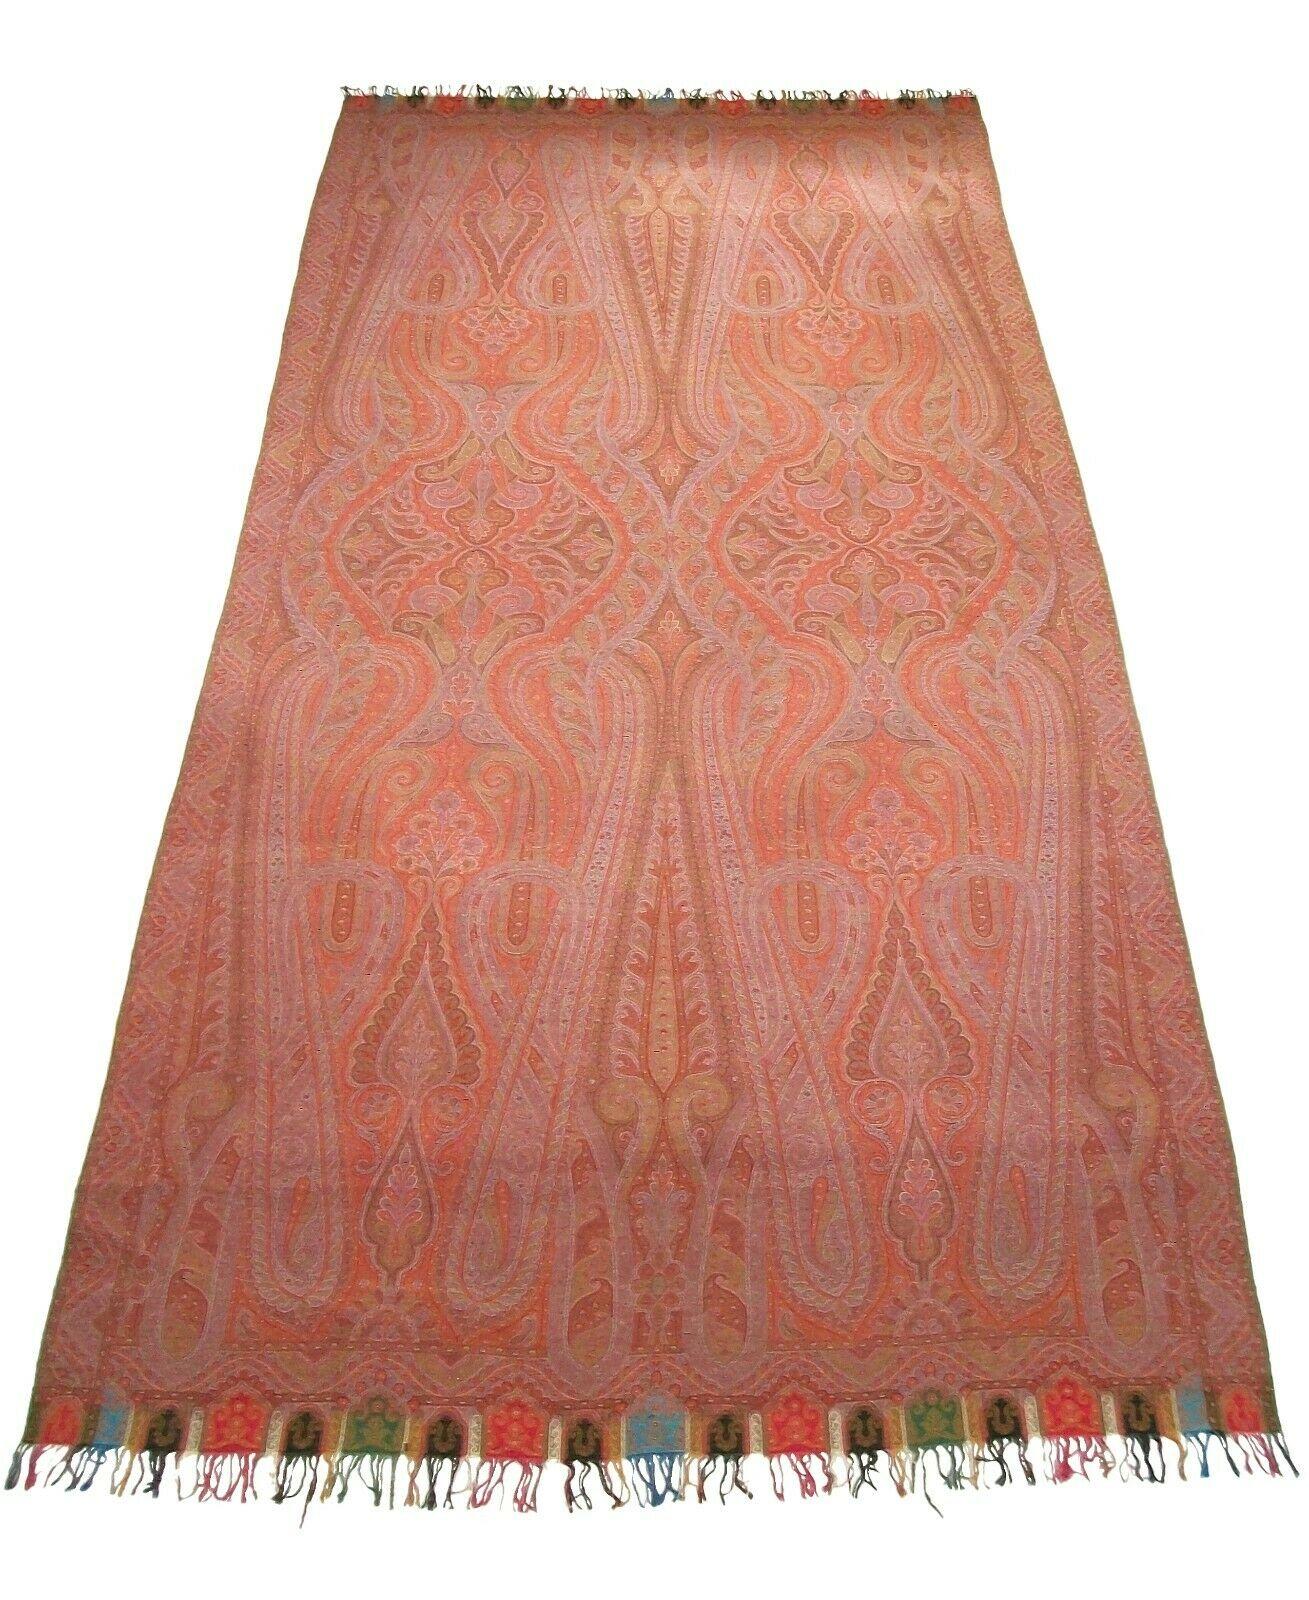 Antiker viktorianischer Paisley-Schal - extragroß - Museumsqualität - feines mehrfarbiges symmetrisches Jacquard-Gewebe mit Paisley-Muster - gemusterte farbige Borte mit Fransen - selbstgewebte Ränder an den anderen Seiten - 100% Wolle - unsigniert